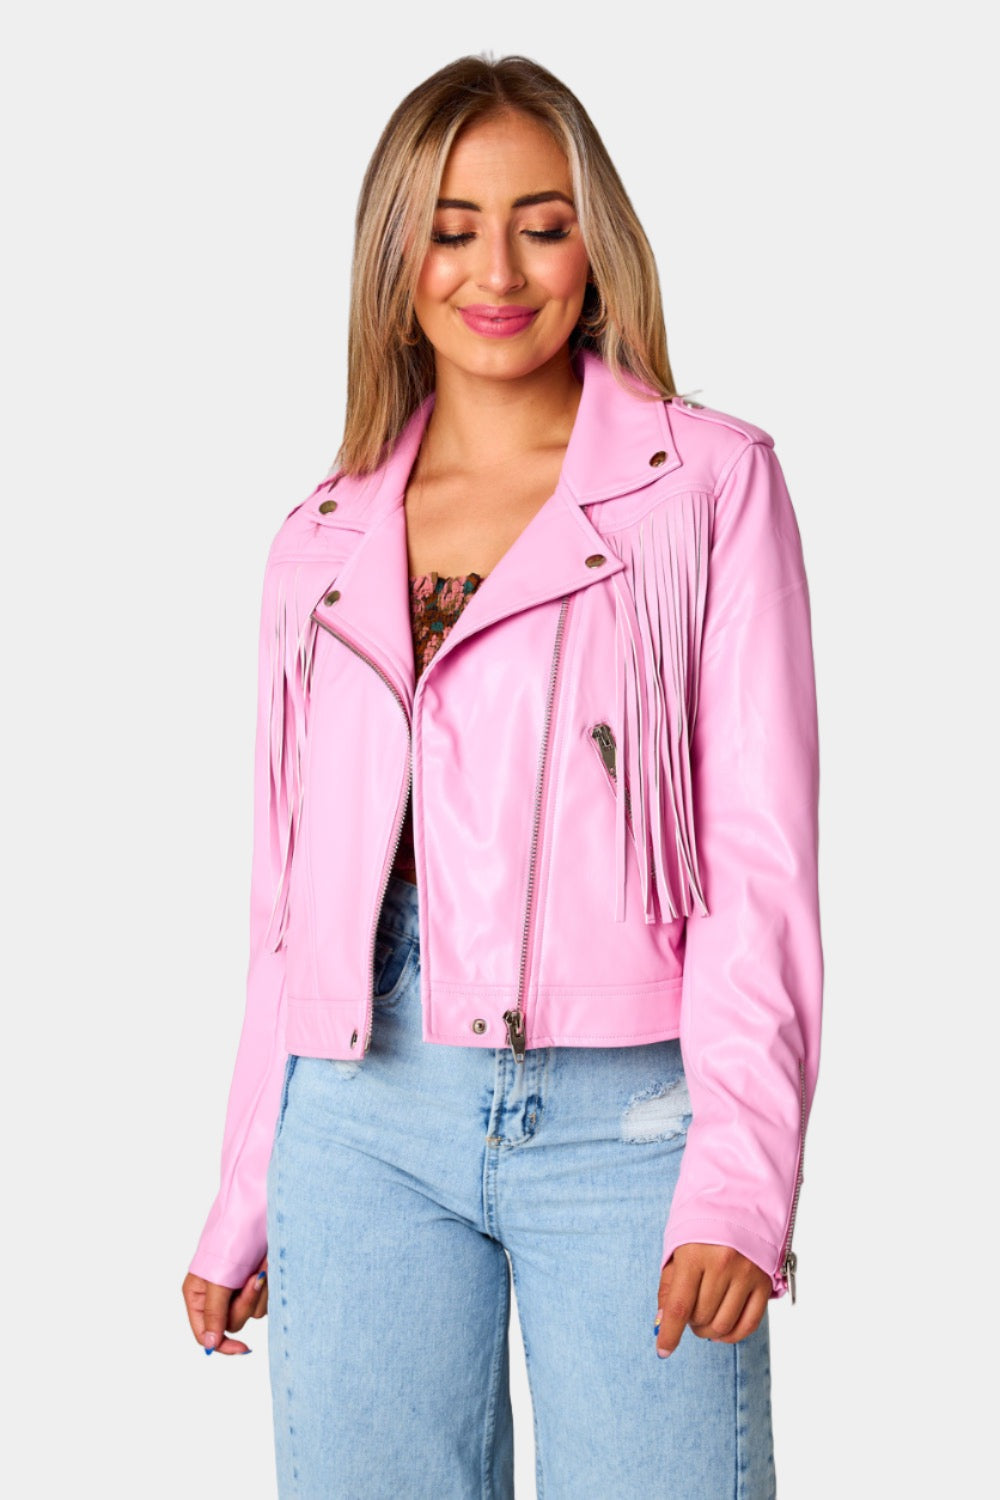 BuddyLove Skylar Fringe Faux Fur Jacket - Hot Pink XL Solids